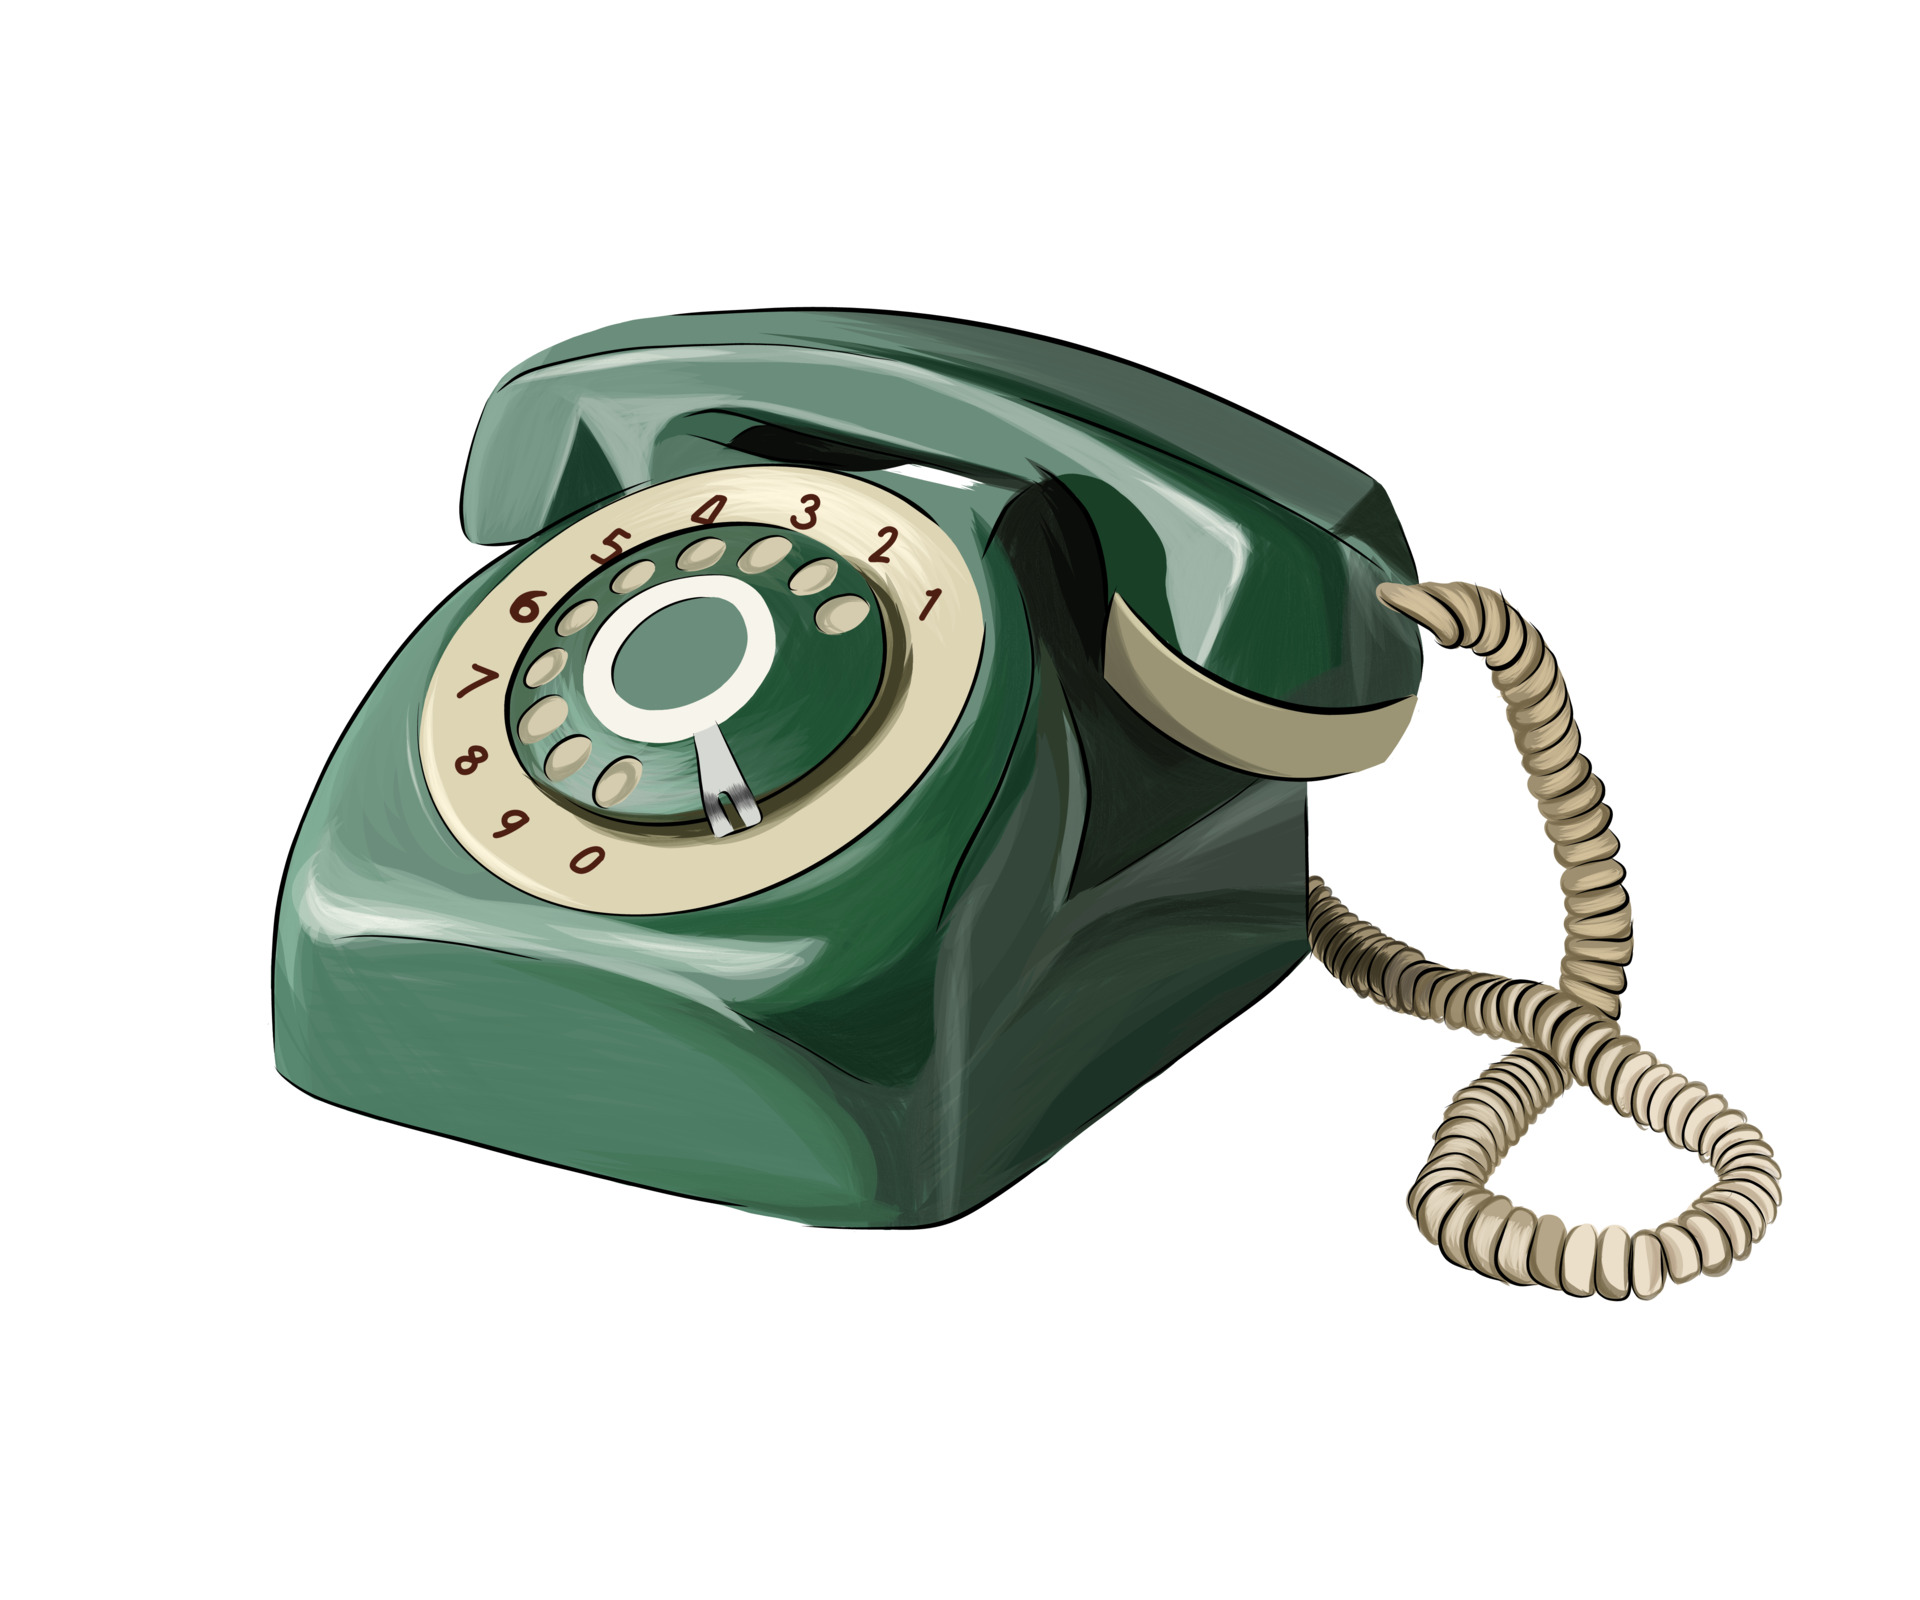 telefono vintage verde da vernici multicolori. spruzzata di acquerello,  disegno colorato, realistico. illustrazione vettoriale di vernici 3621329  Arte vettoriale a Vecteezy